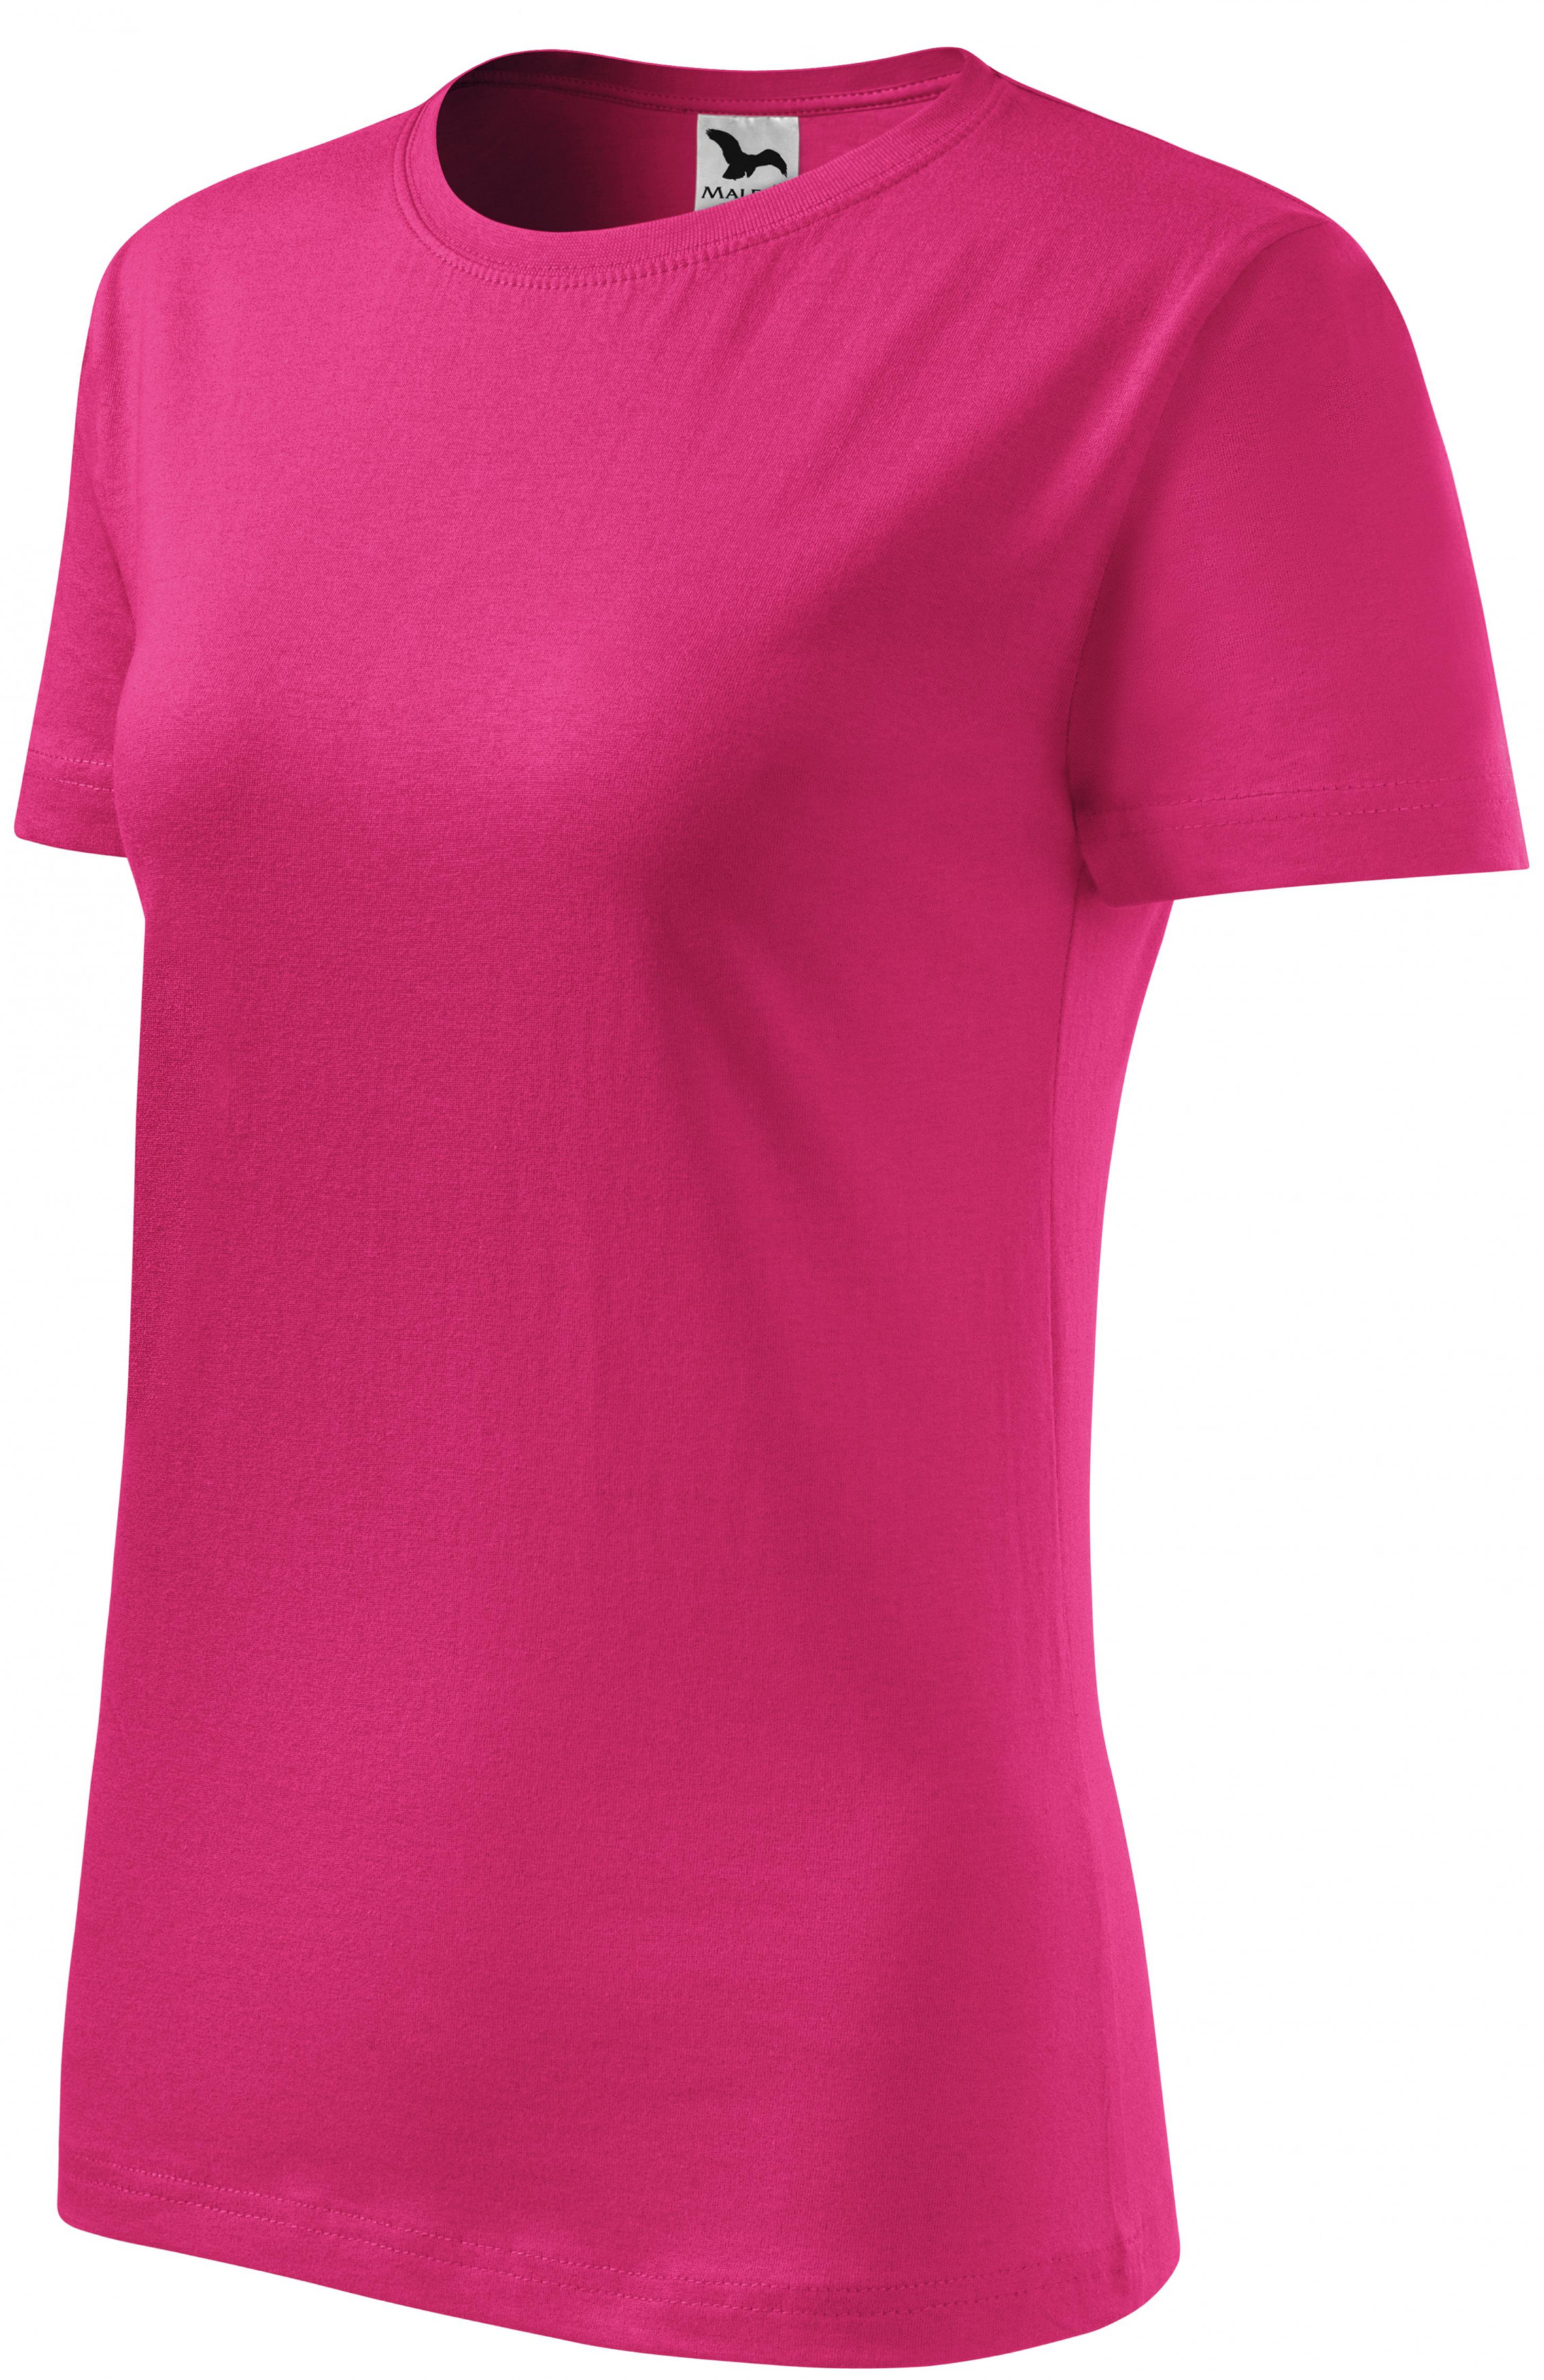 Dámske tričko klasické, purpurová, XL